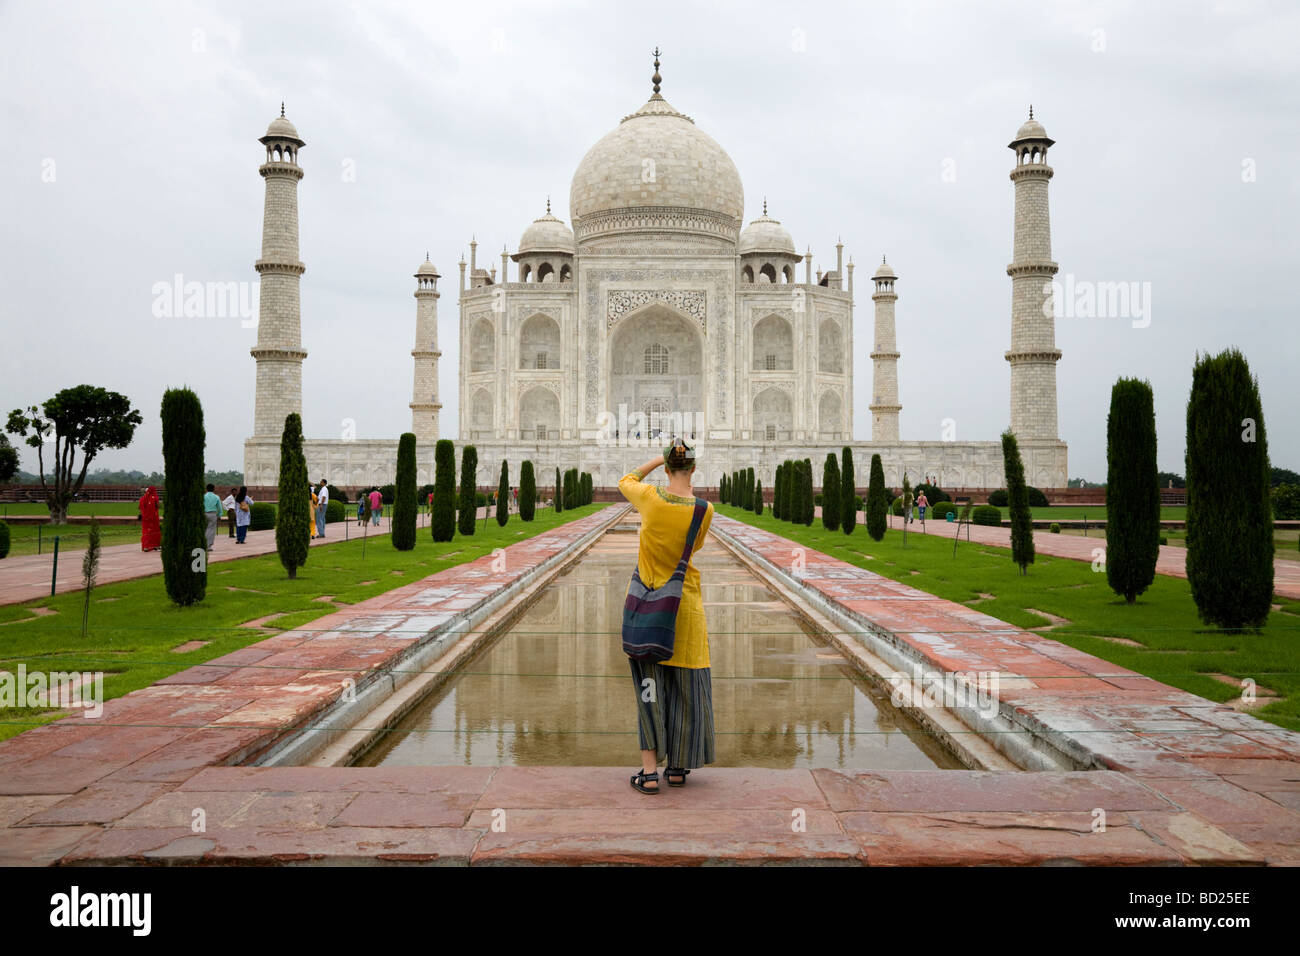 Woman tourist takes a photo of the Taj Mahal mausoleum, Agra. India. Stock Photo